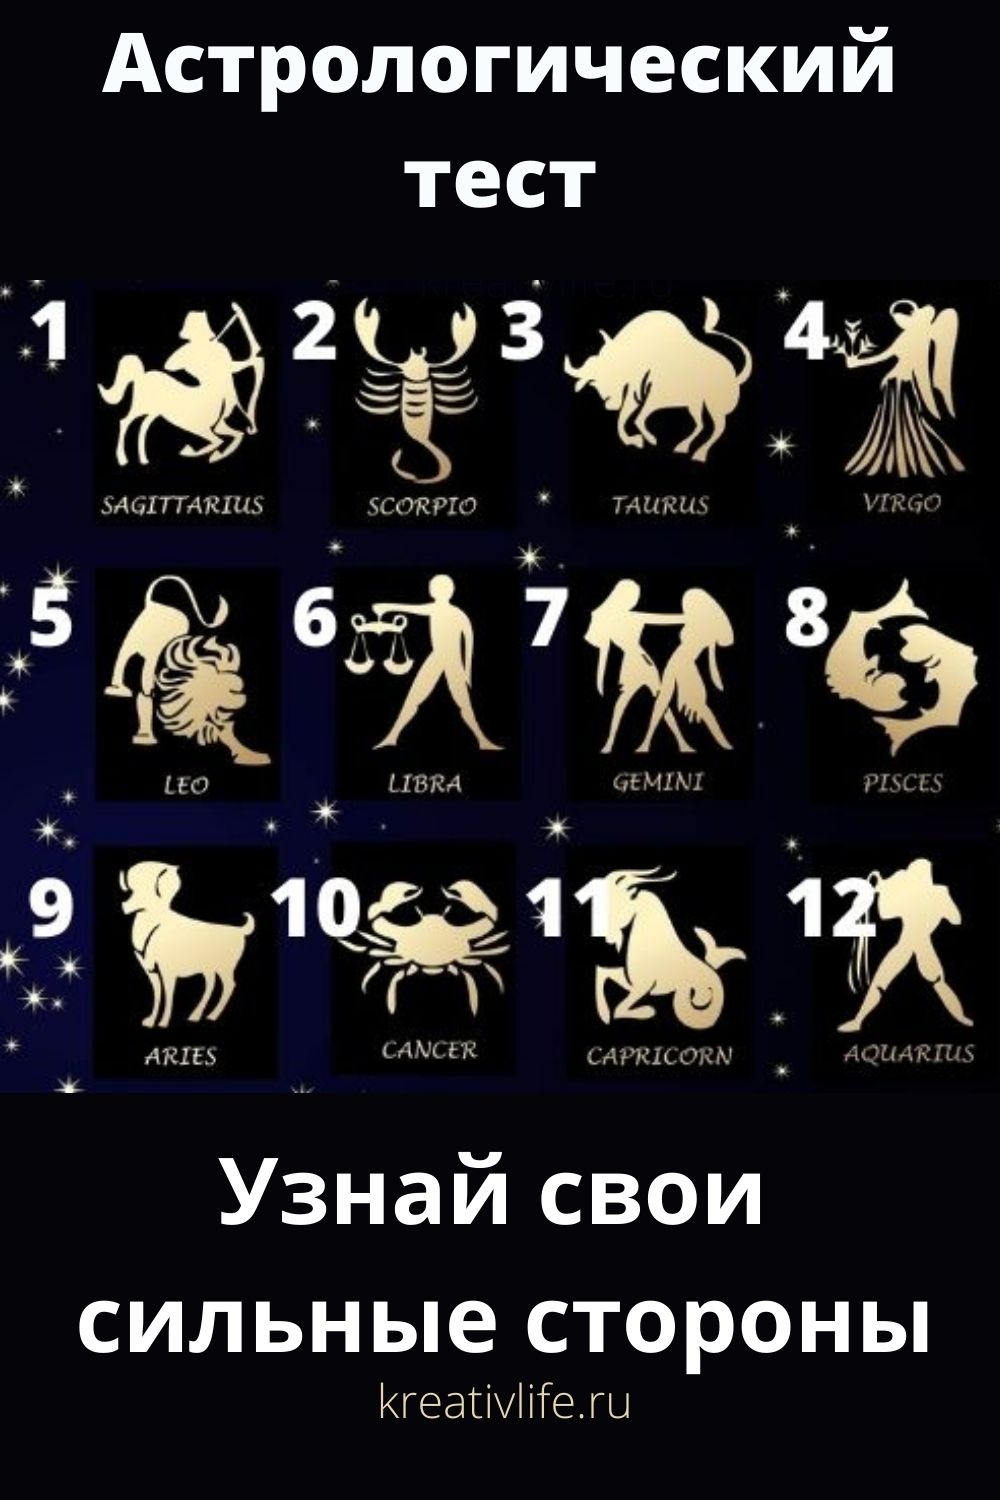 Астрологический тест онлайн 